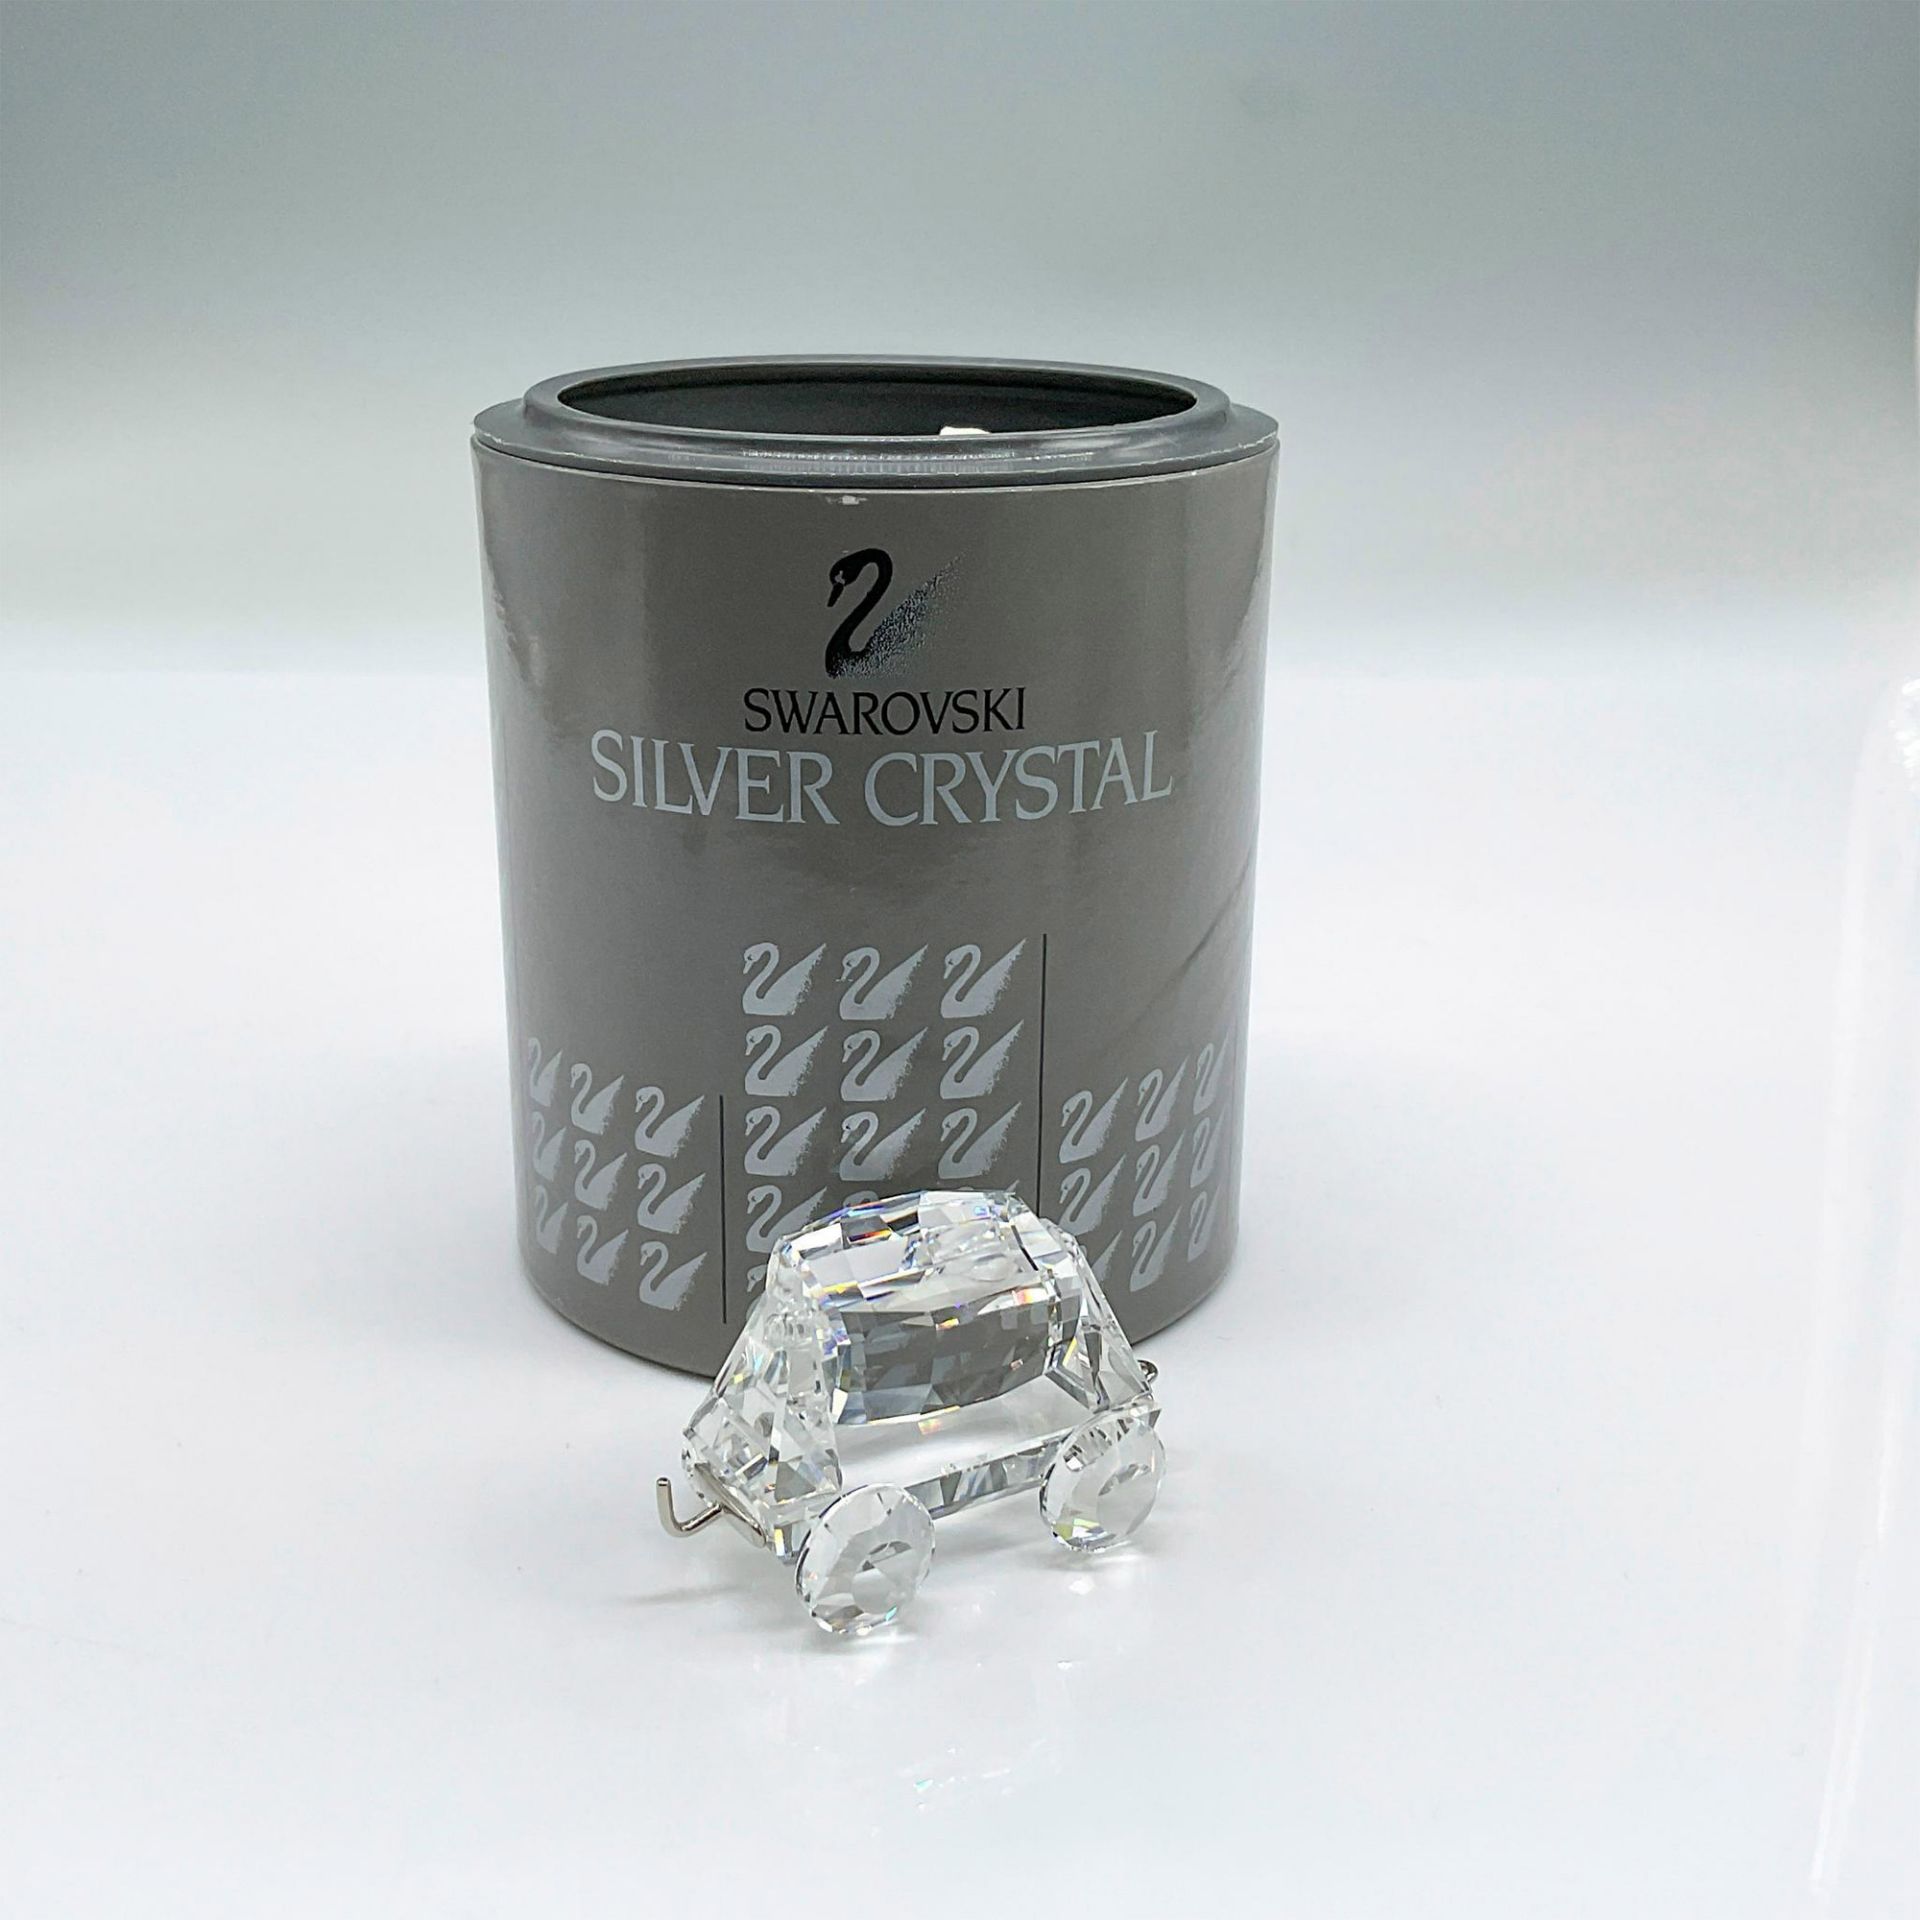 Swarovski Silver Crystal Figurine, Tipping Wagon Train Car - Image 4 of 4